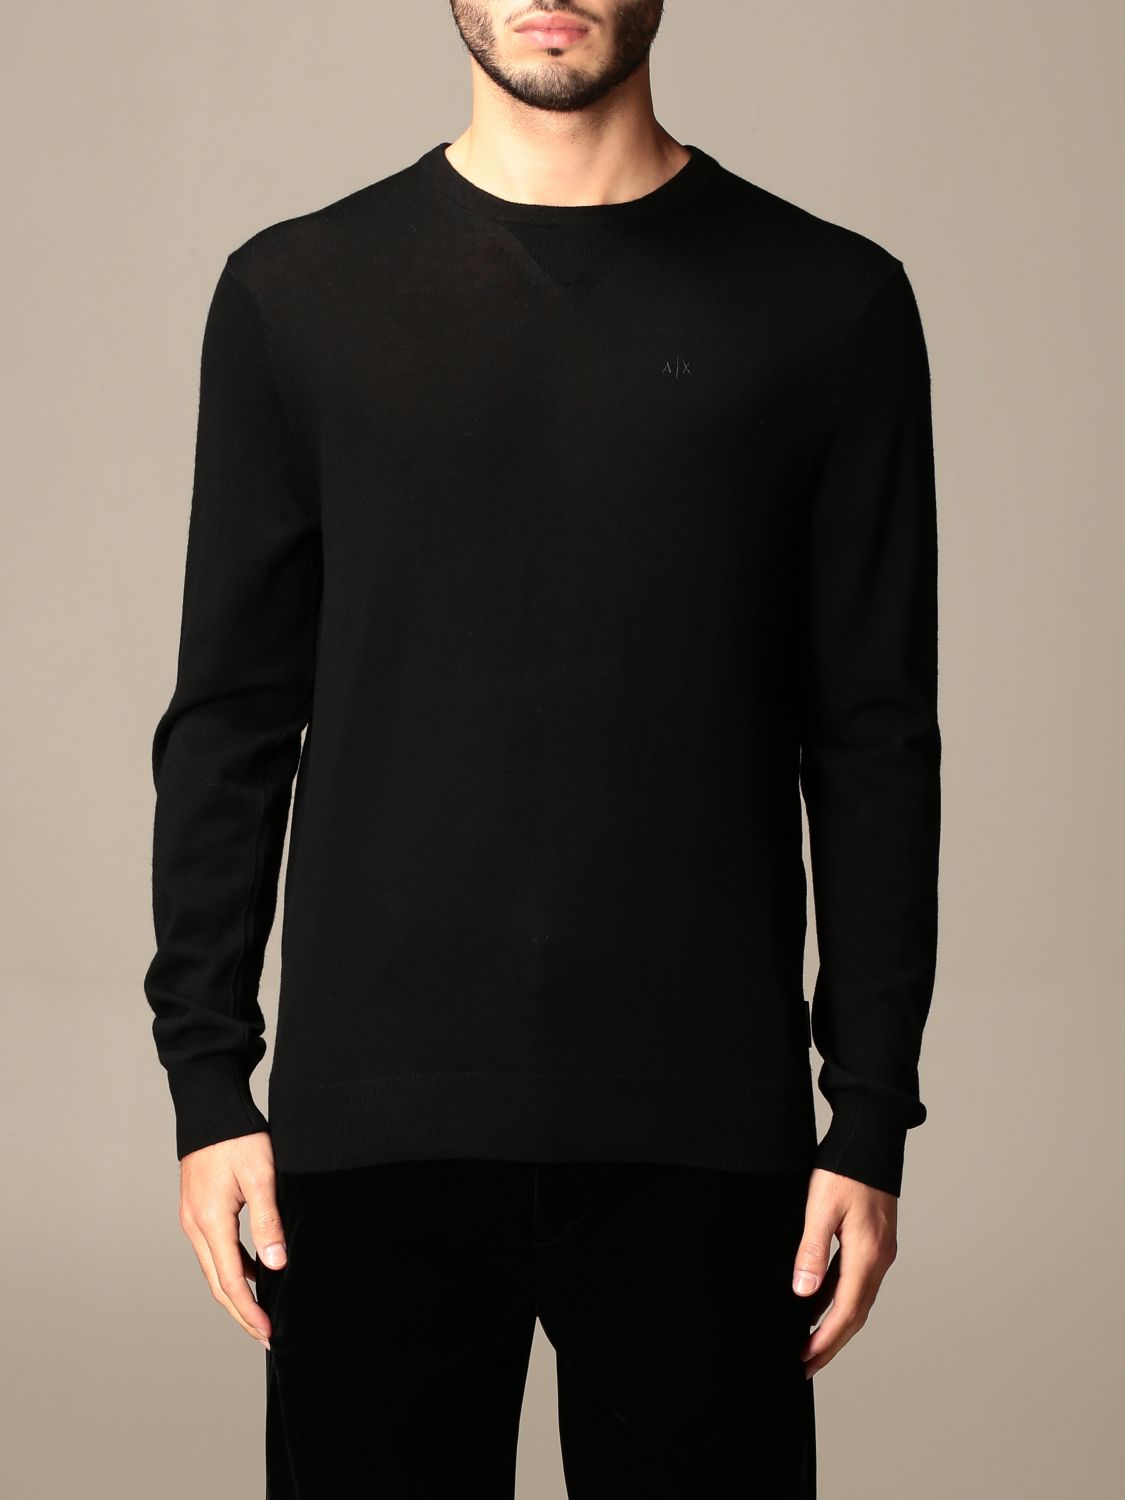 ARMANI EXCHANGE: basic crewneck sweater - Black | Armani Exchange